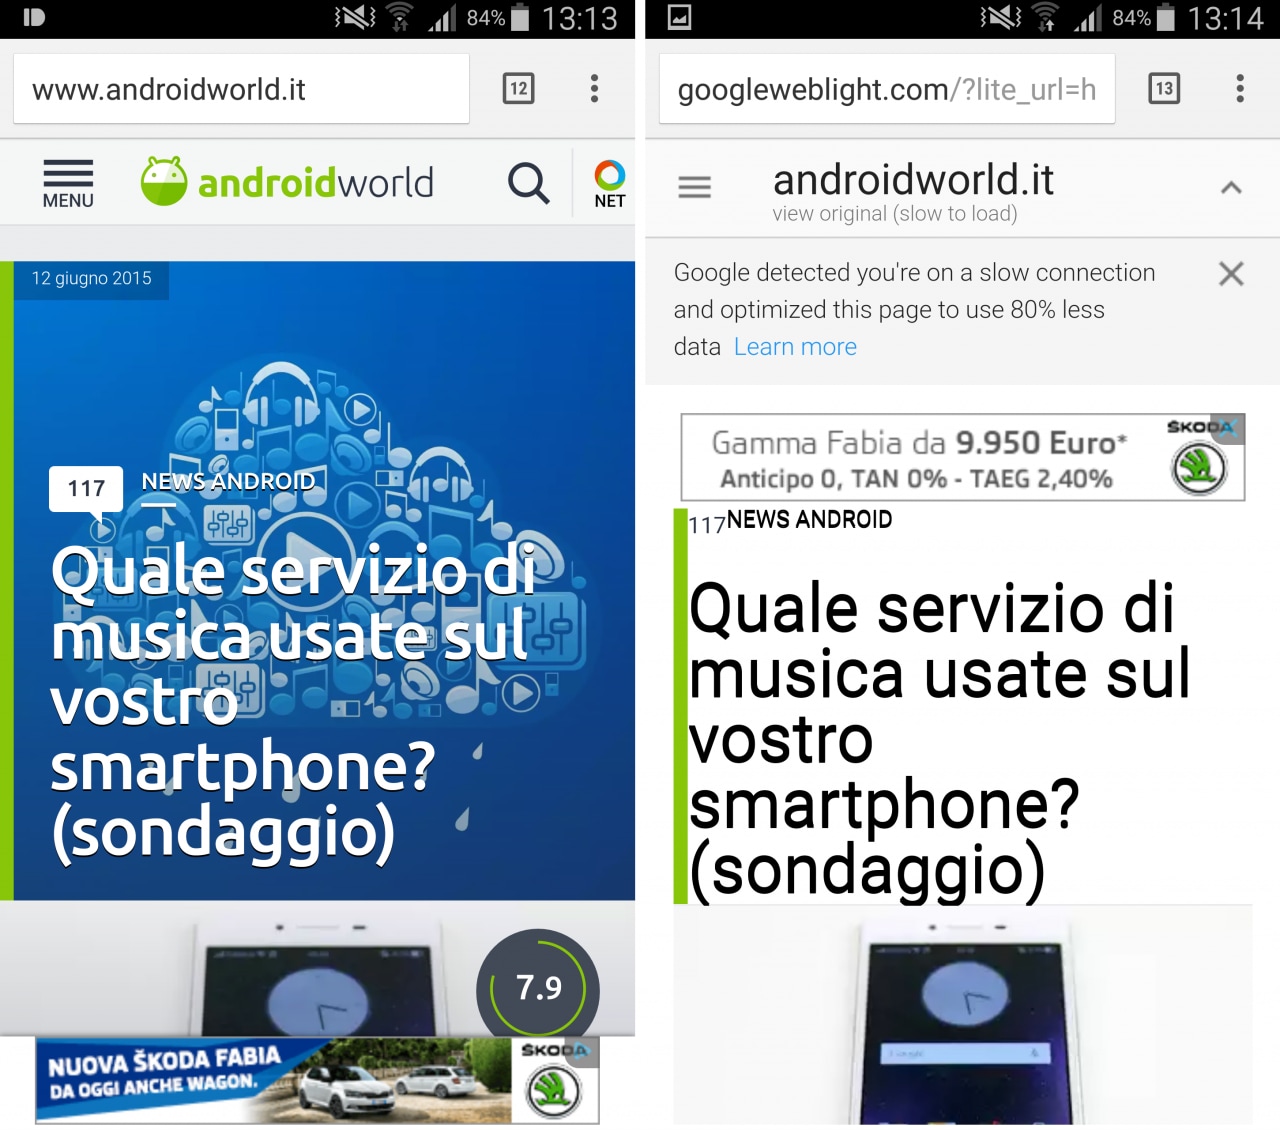 Google Web Light, il servizio per velocizzare il caricamento dei siti che non arriverà in Italia (video)